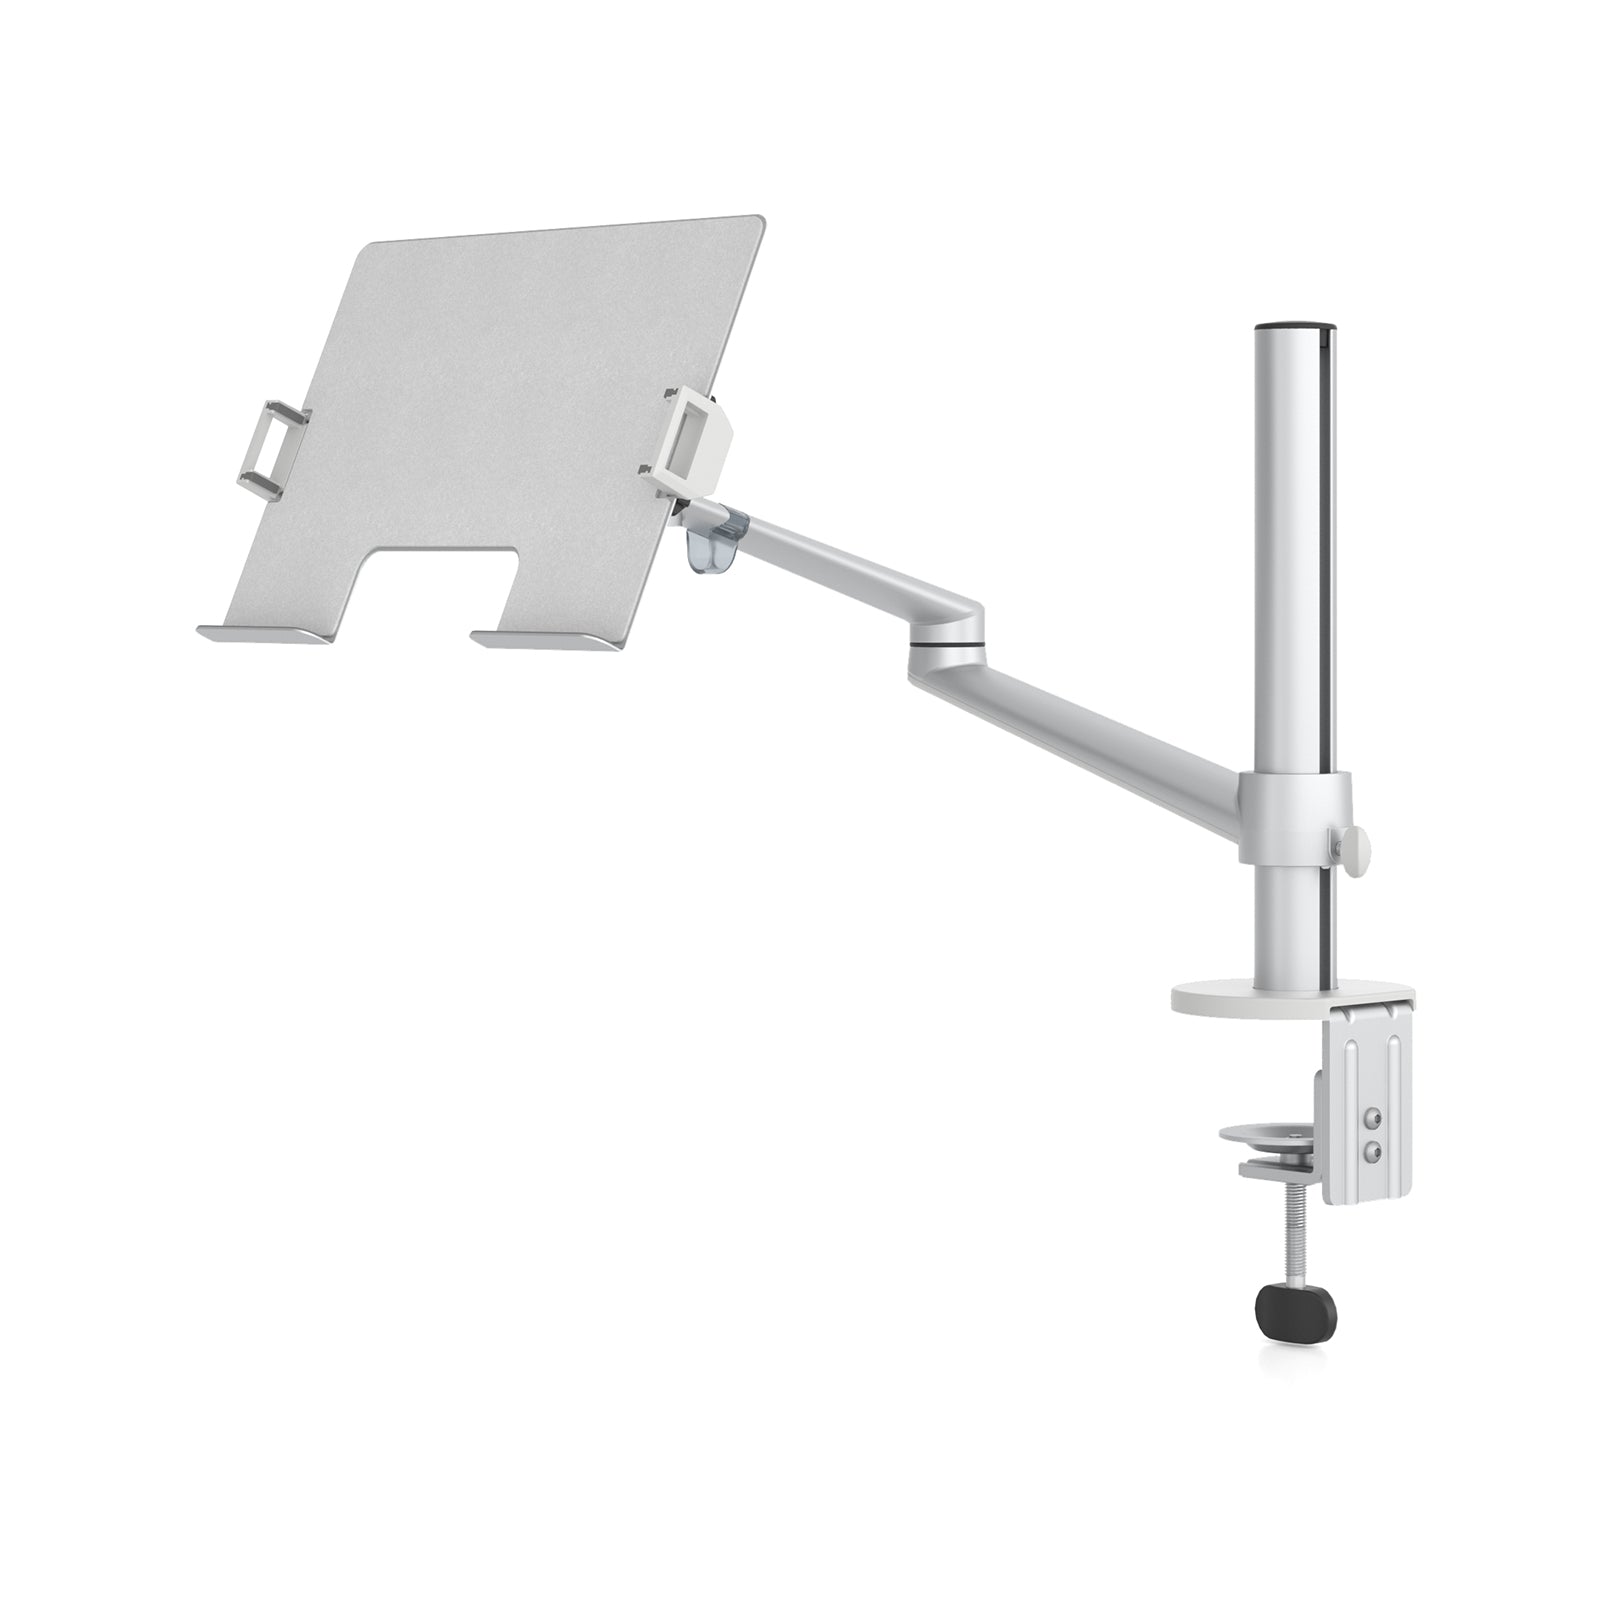 Adjustable Laptop Tablet Stand Desk Mount Bracket Silver